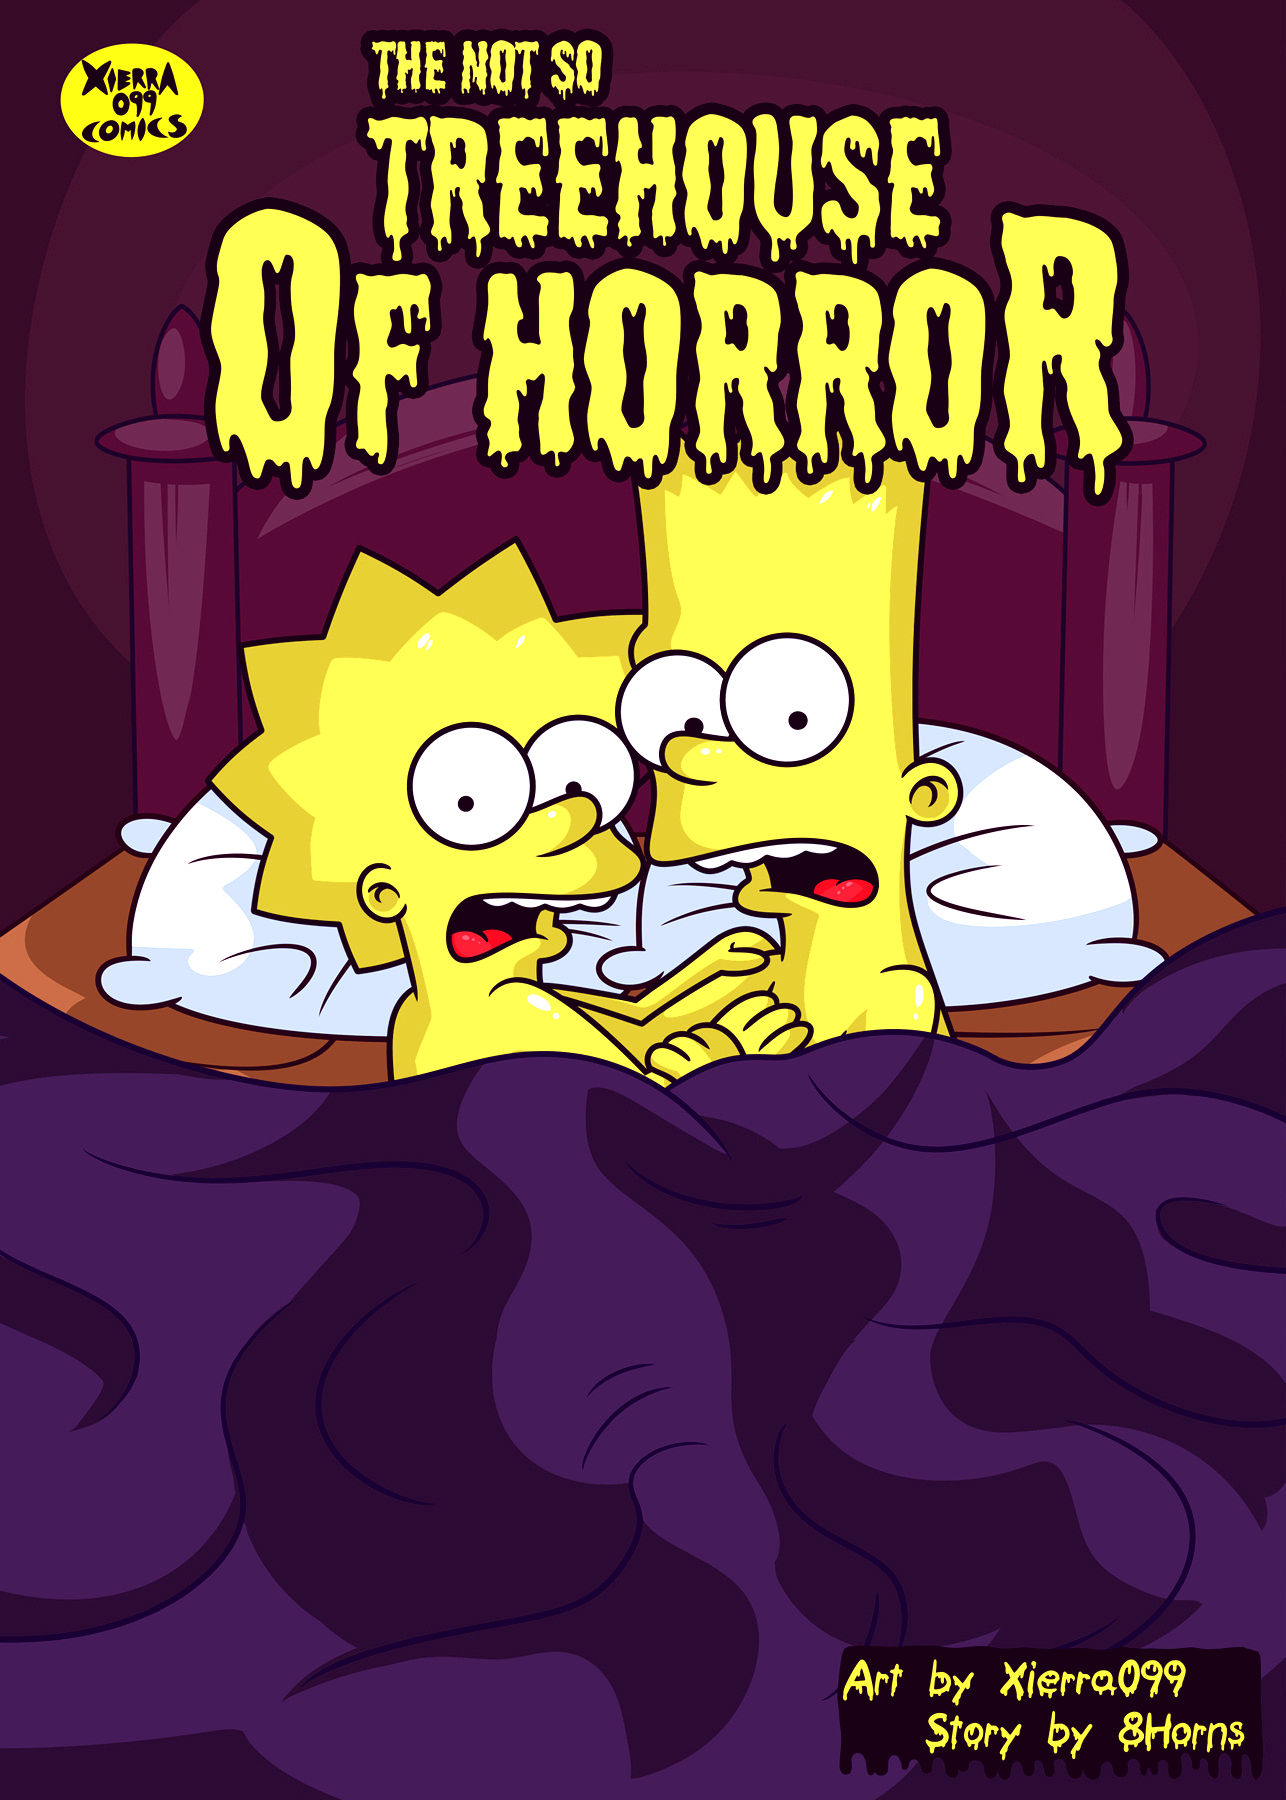 Bart and lisa simpson porn comic